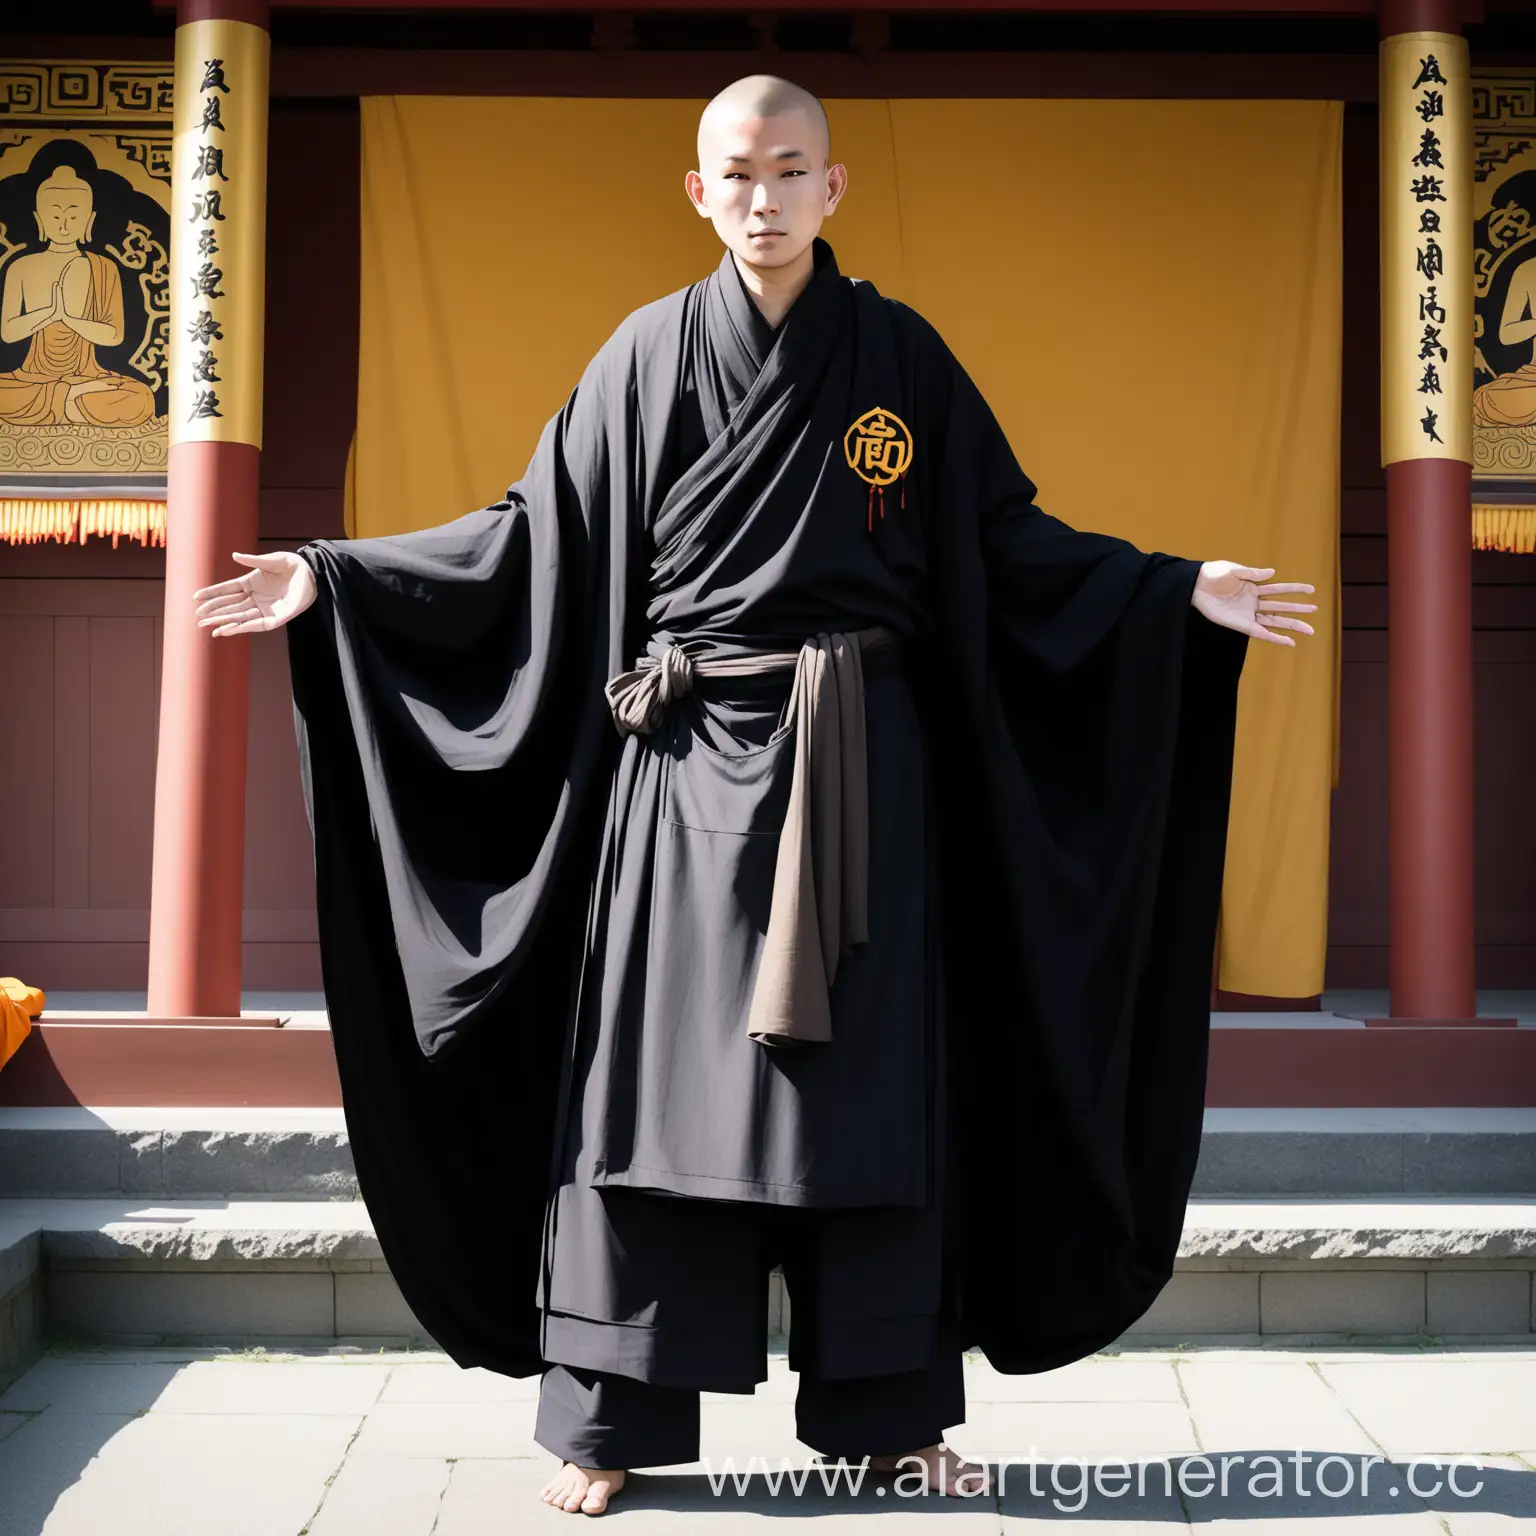 Черное одеяние для буддийского монаха. Одеяние состоит из широких штанов и накидки с длинными свободными рукавами. Спереди повязан передник с отличительным знаком - мантрой